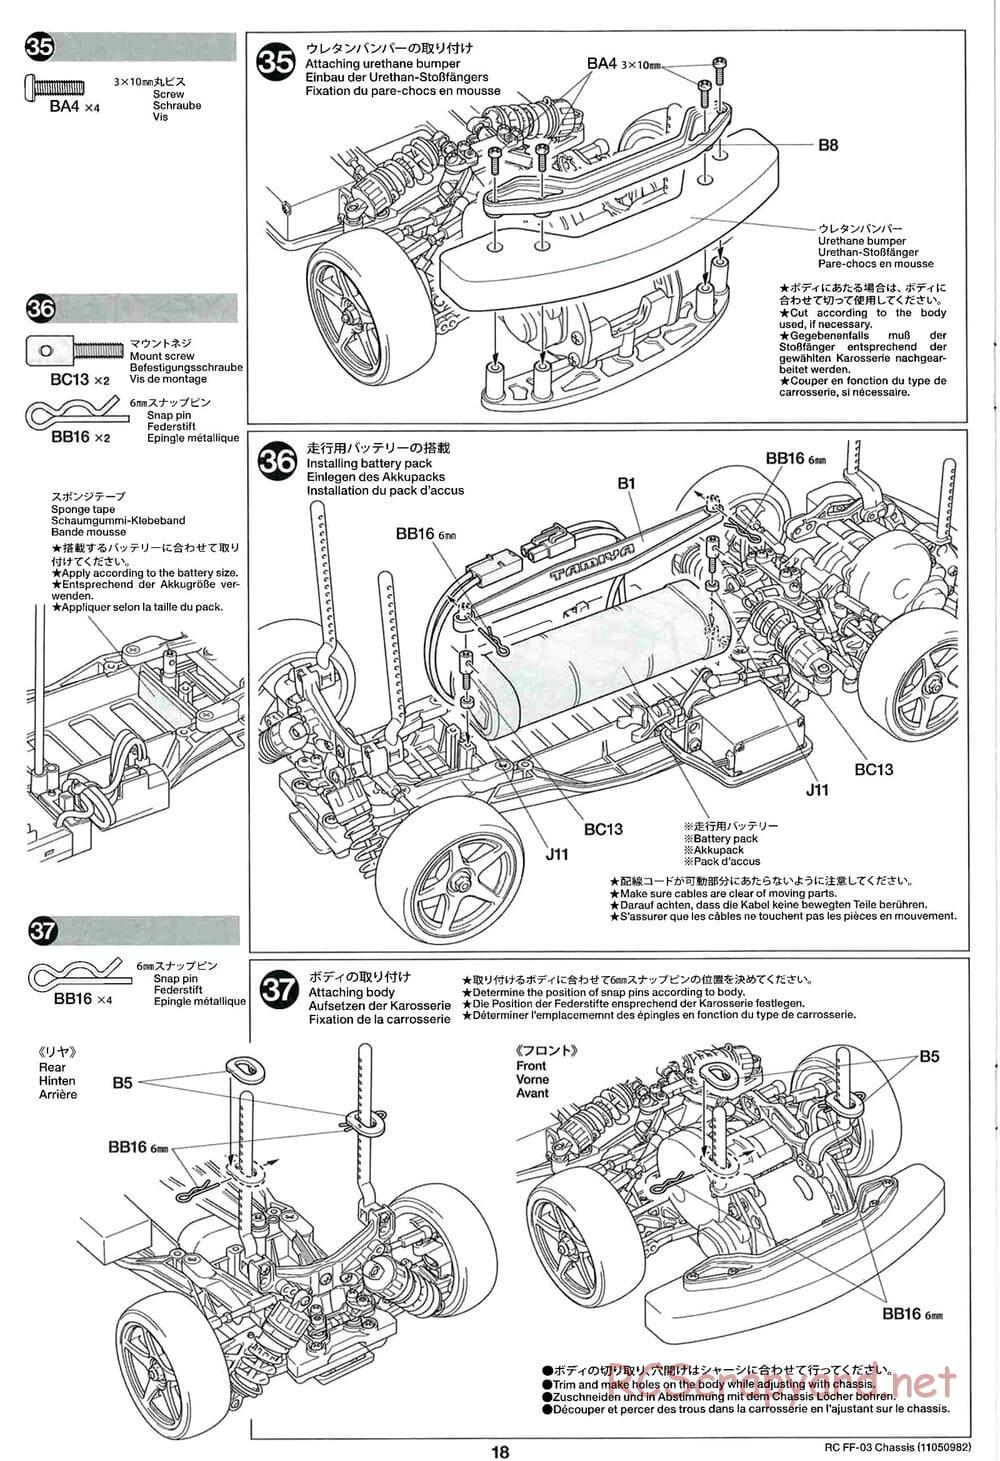 Tamiya - Honda CR-Z - FF-03 Chassis - Manual - Page 18